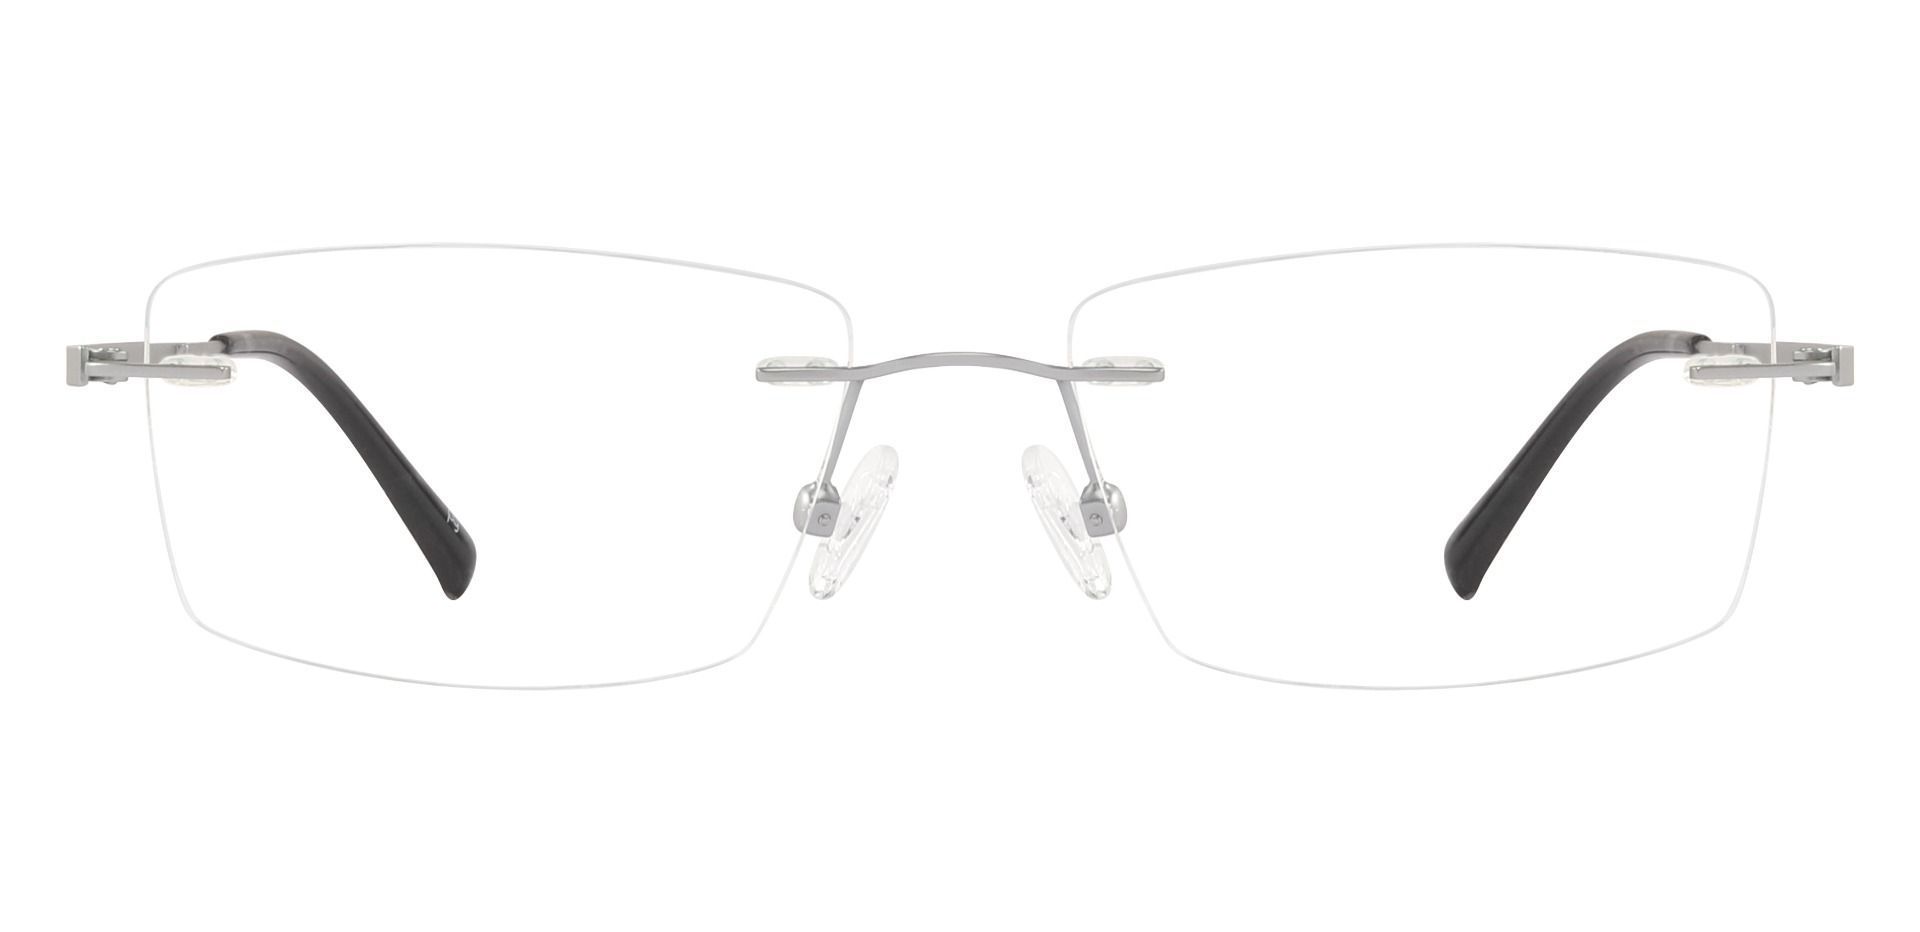 Lansing Rimless Progressive Glasses - Silver | Men's Eyeglasses | Payne ...